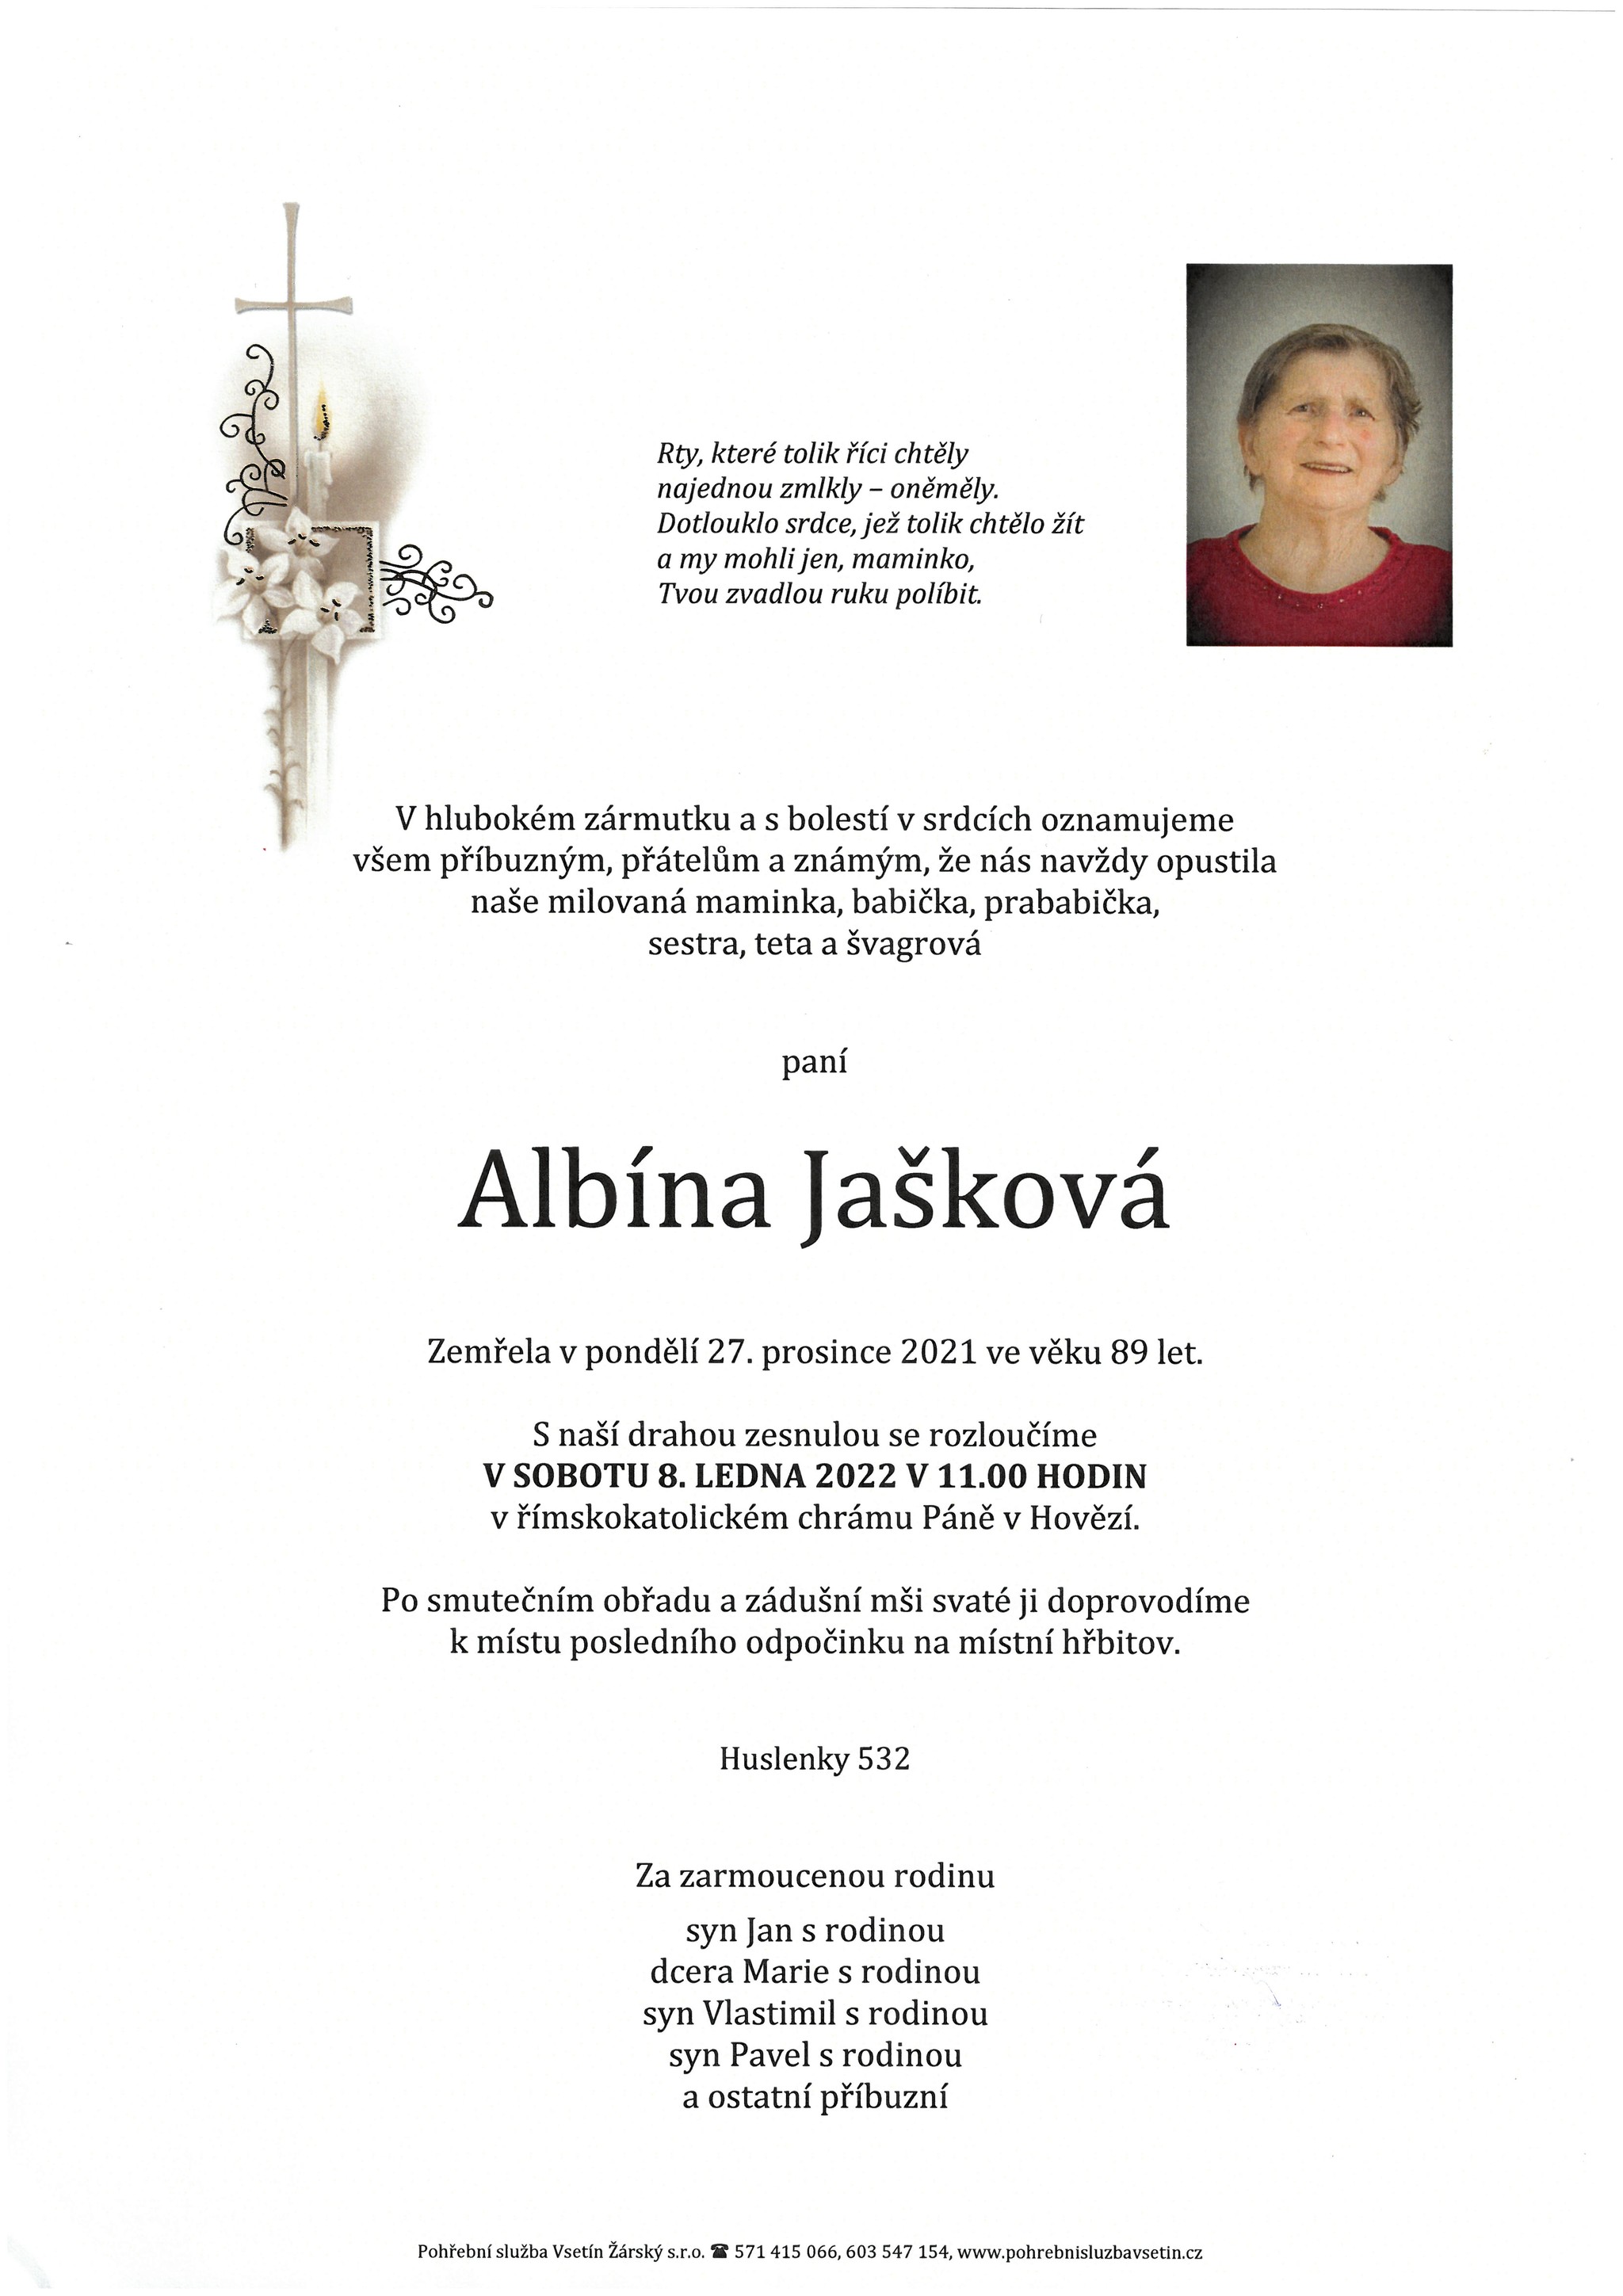 Albína Jašková